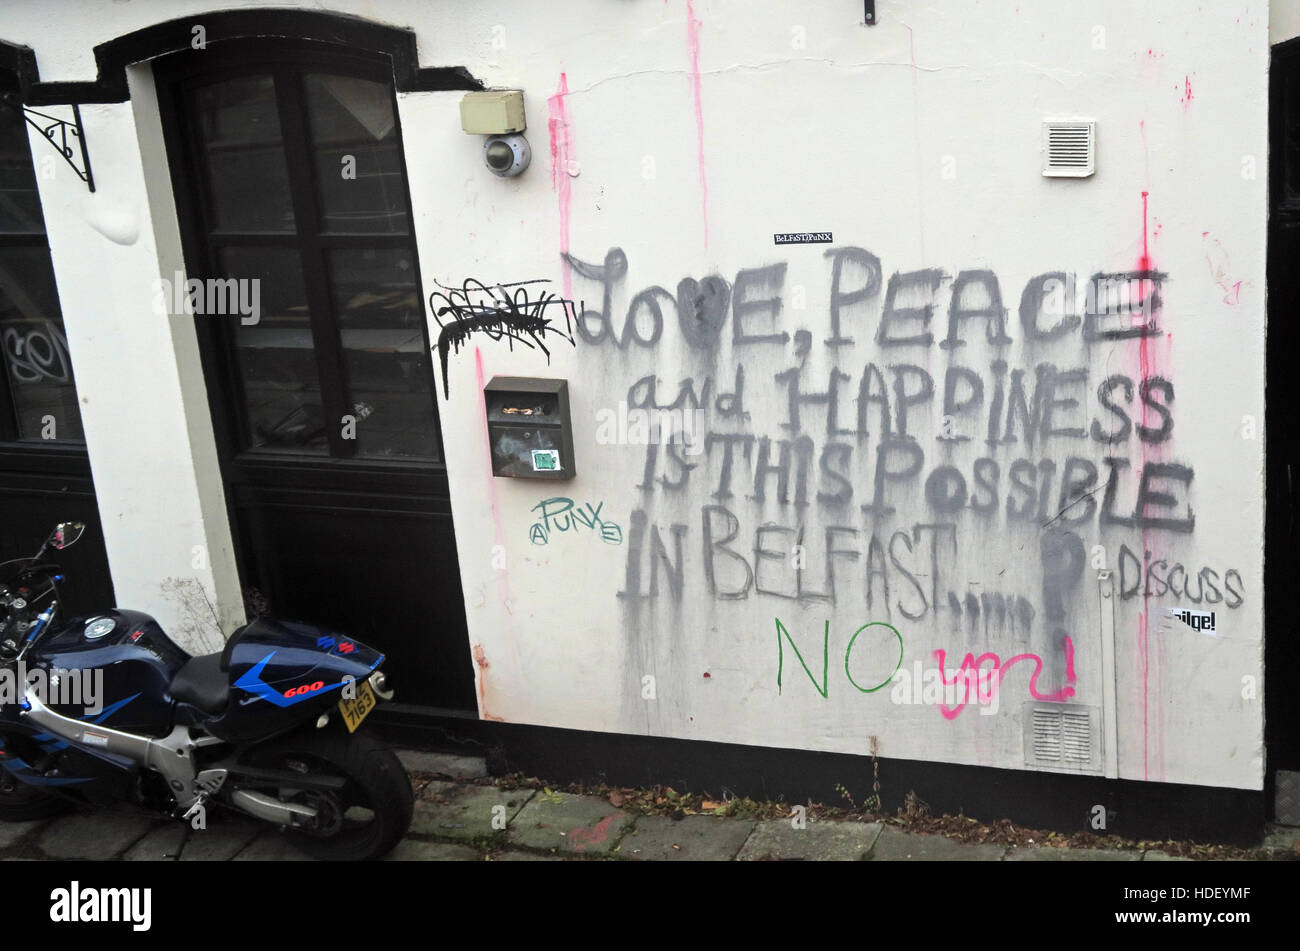 Liebe, Frieden und Glück, ist das möglich in Belfast? Diskutieren Stockfoto